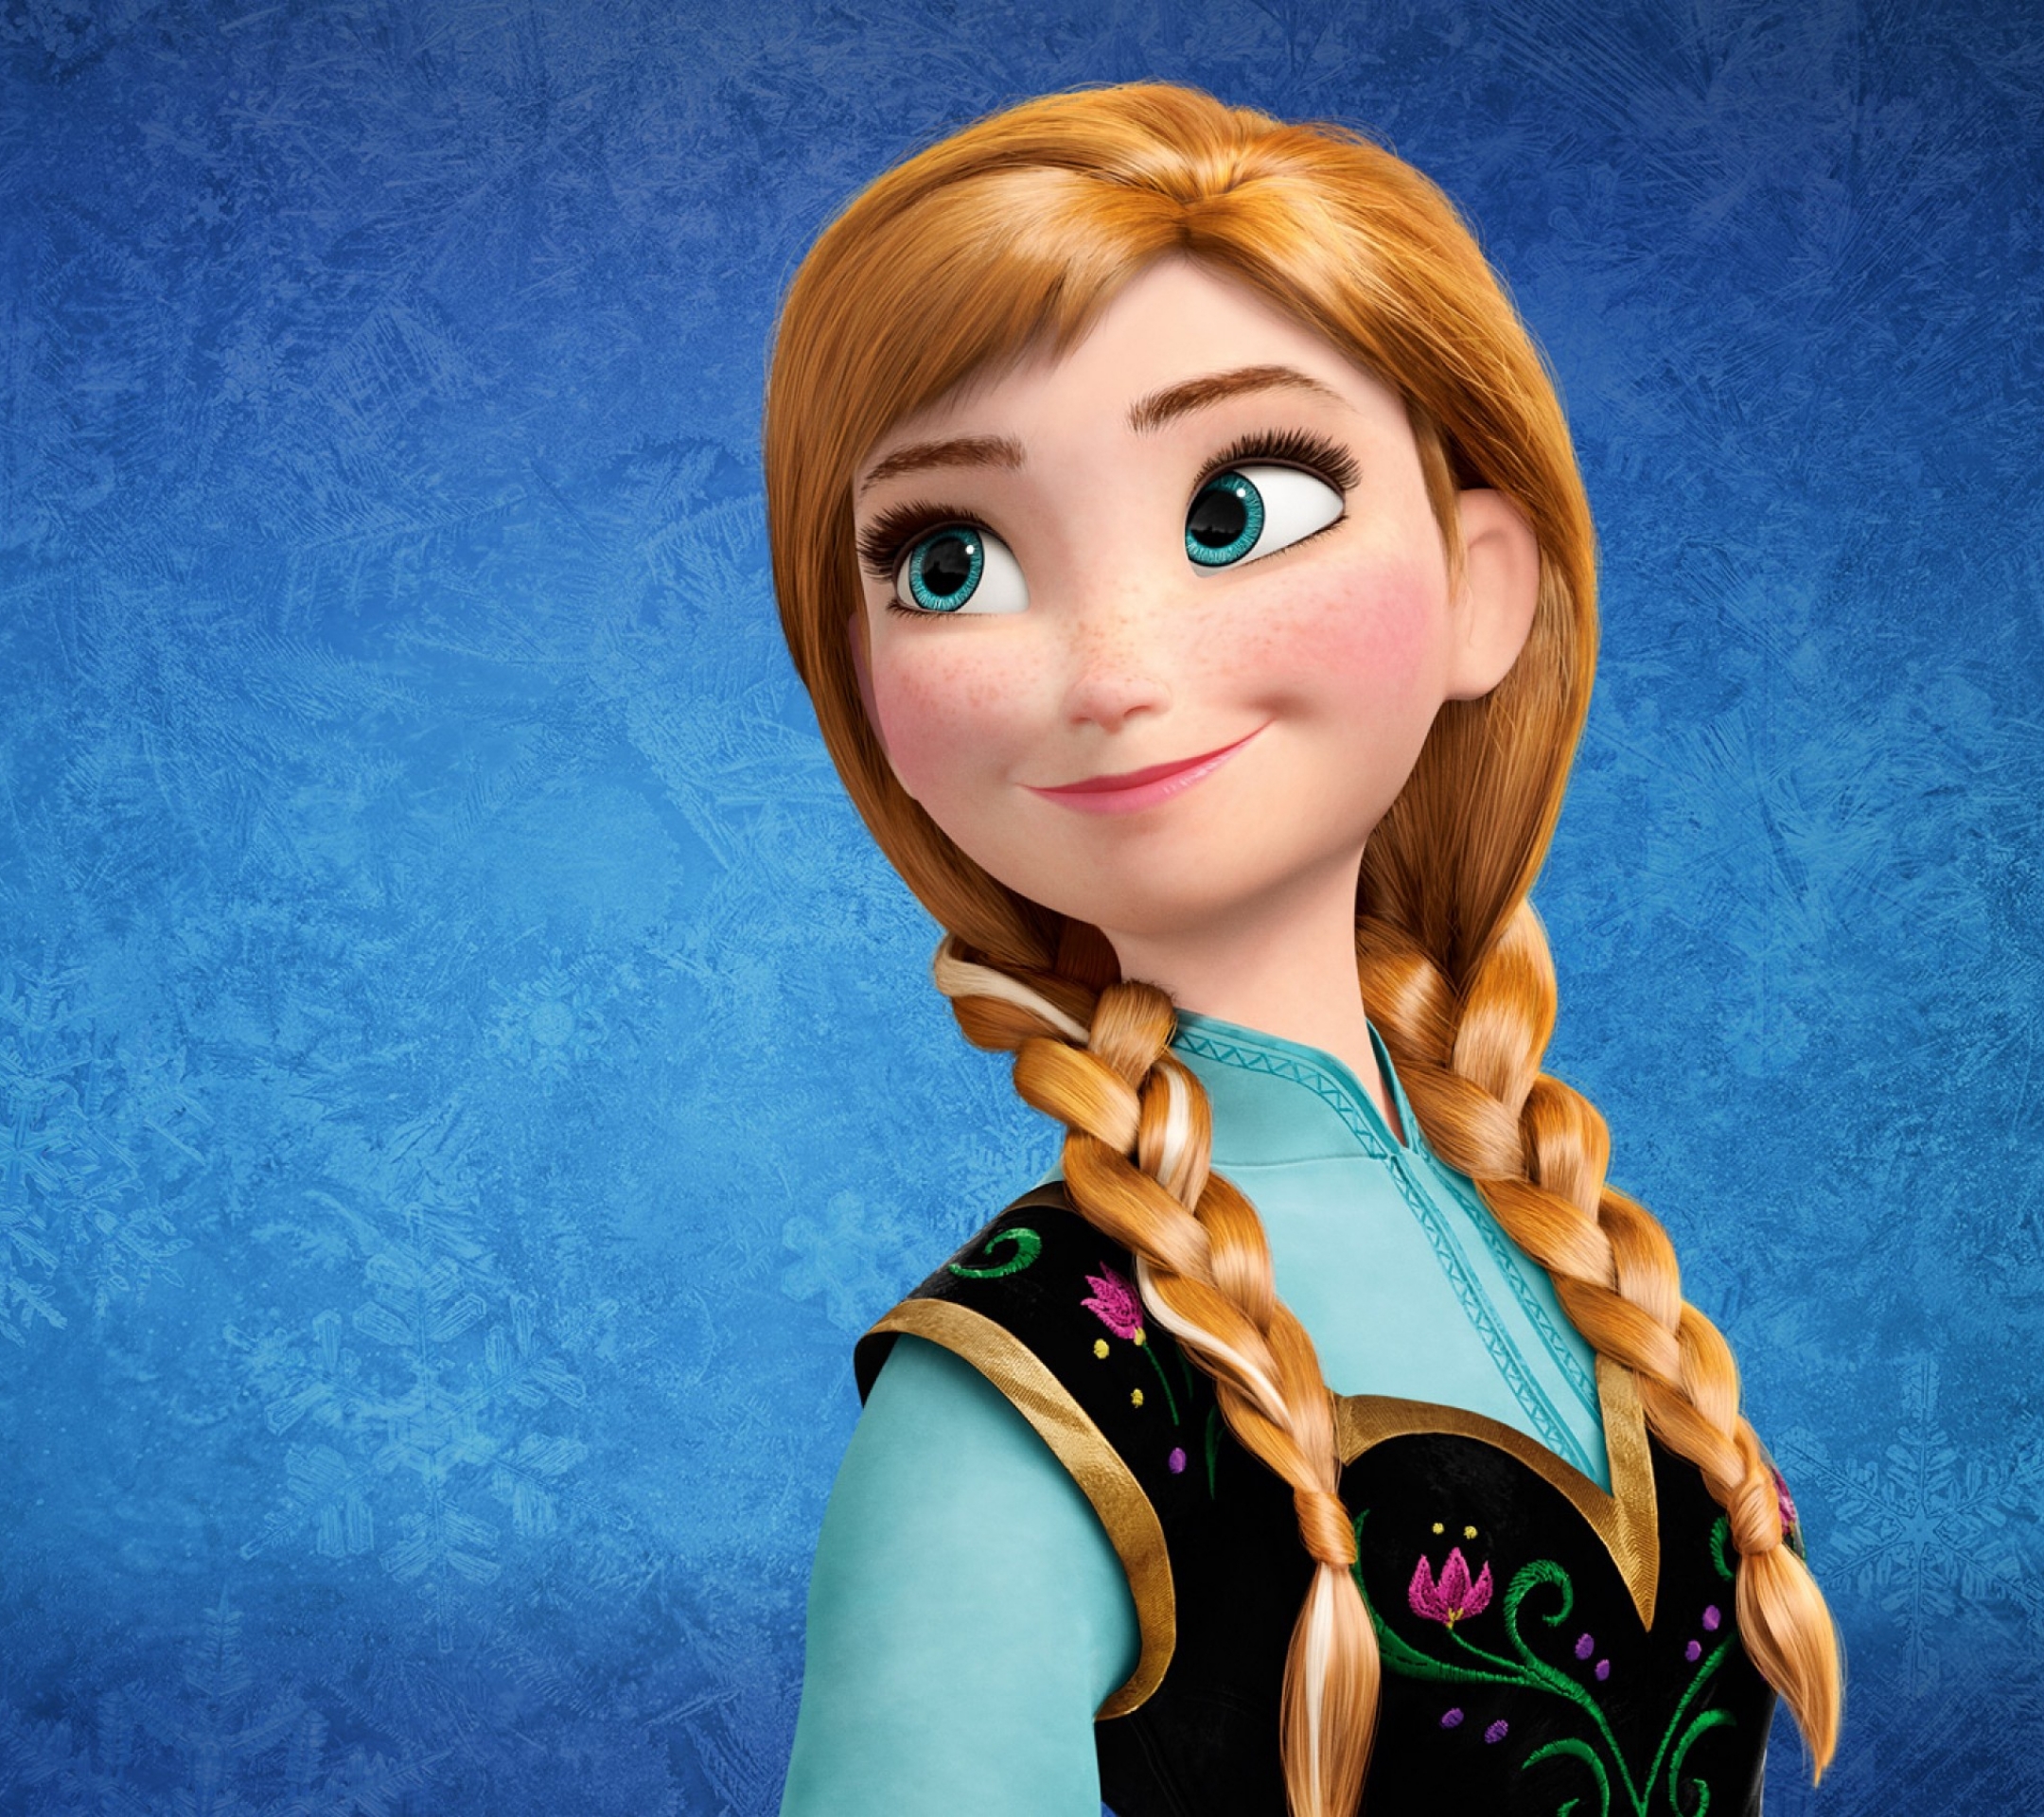 Download mobile wallpaper Frozen, Movie, Frozen (Movie), Anna (Frozen) for free.